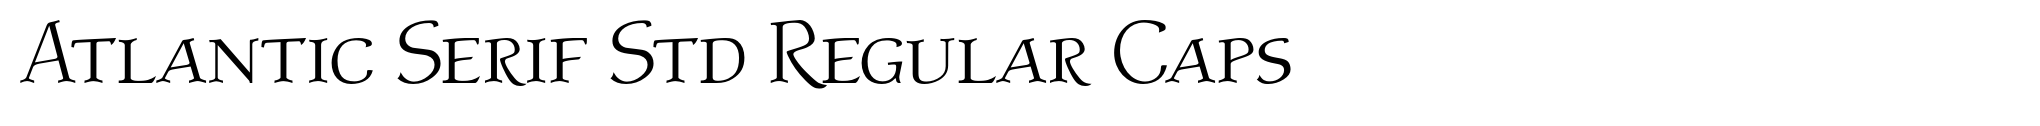 Atlantic Serif Std Regular Caps image